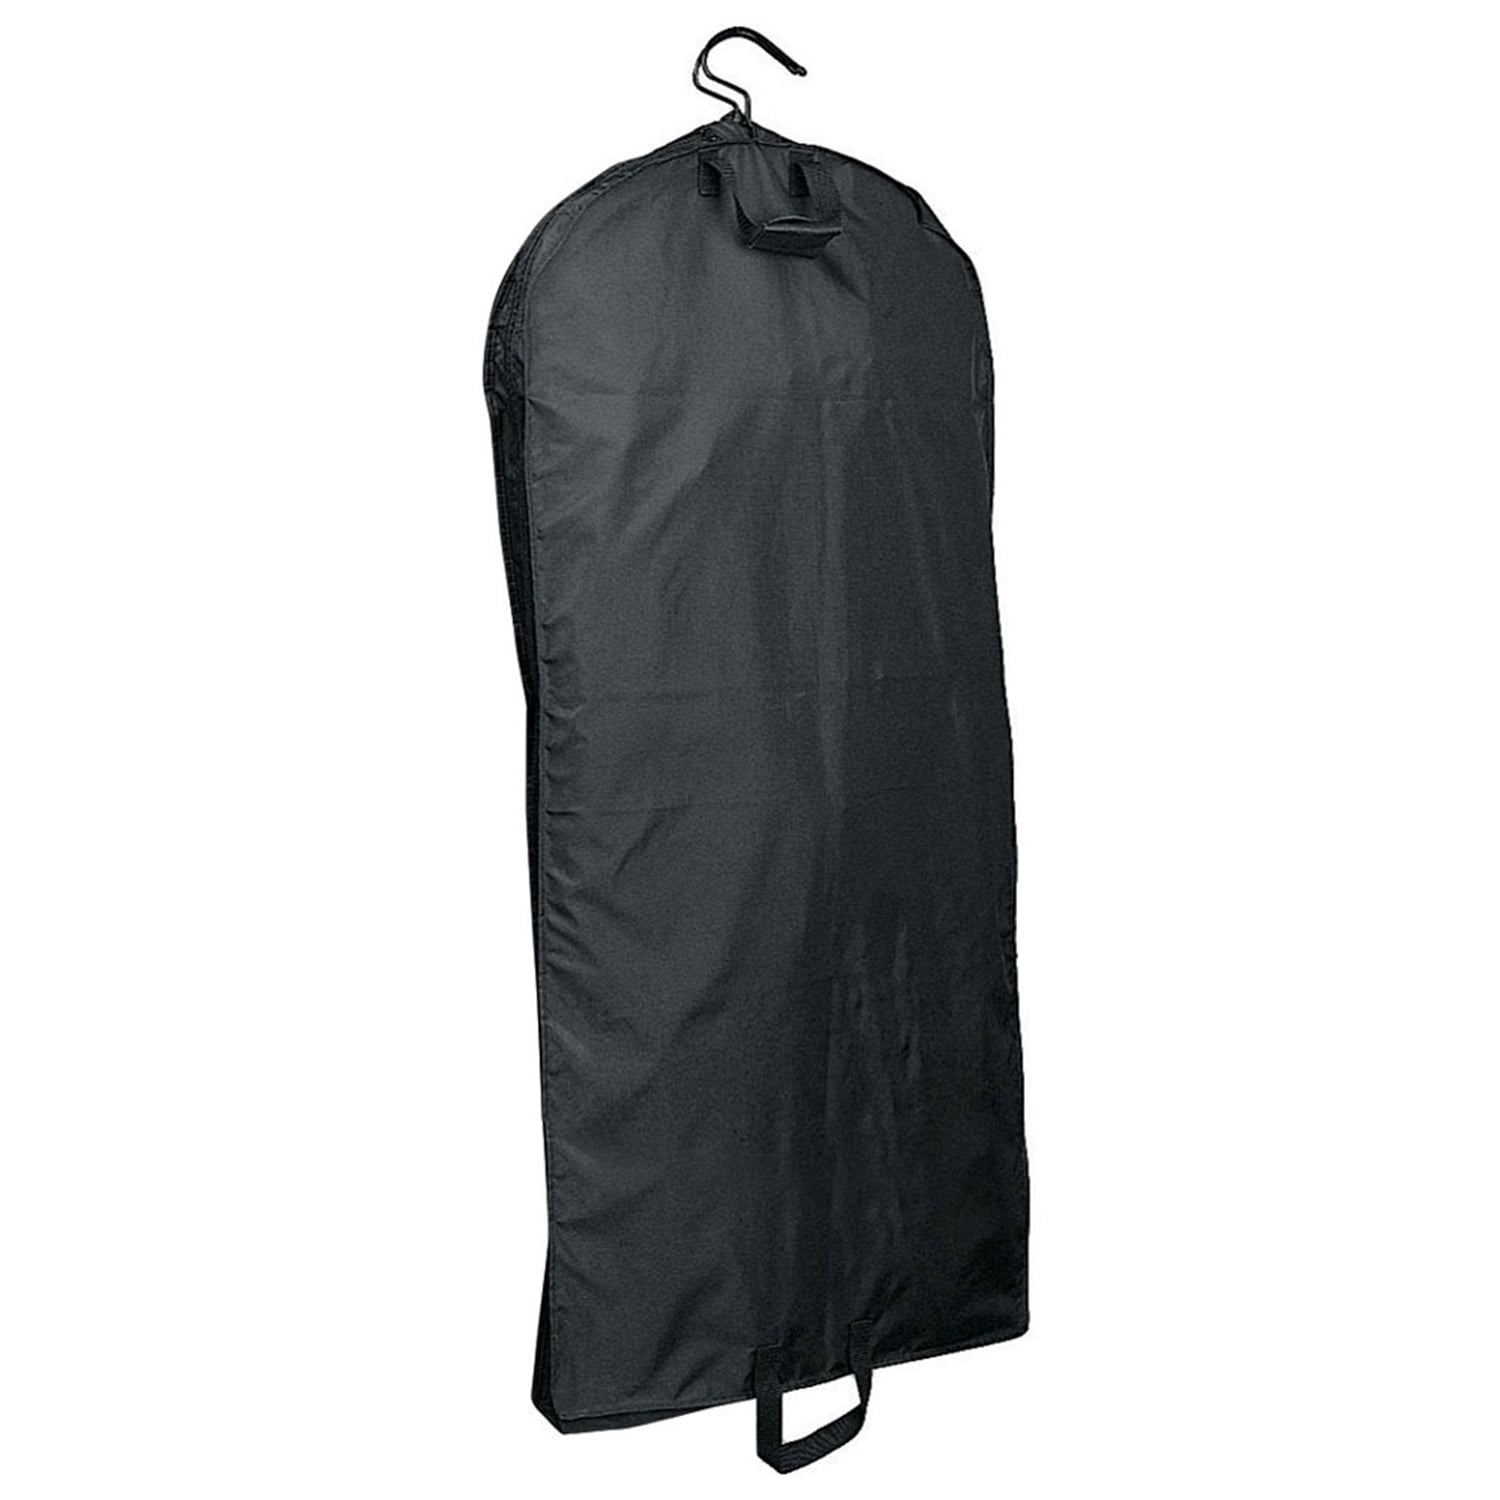 Only Hangers Clear Vinyl Garment Bag w/ Zipper 6PK